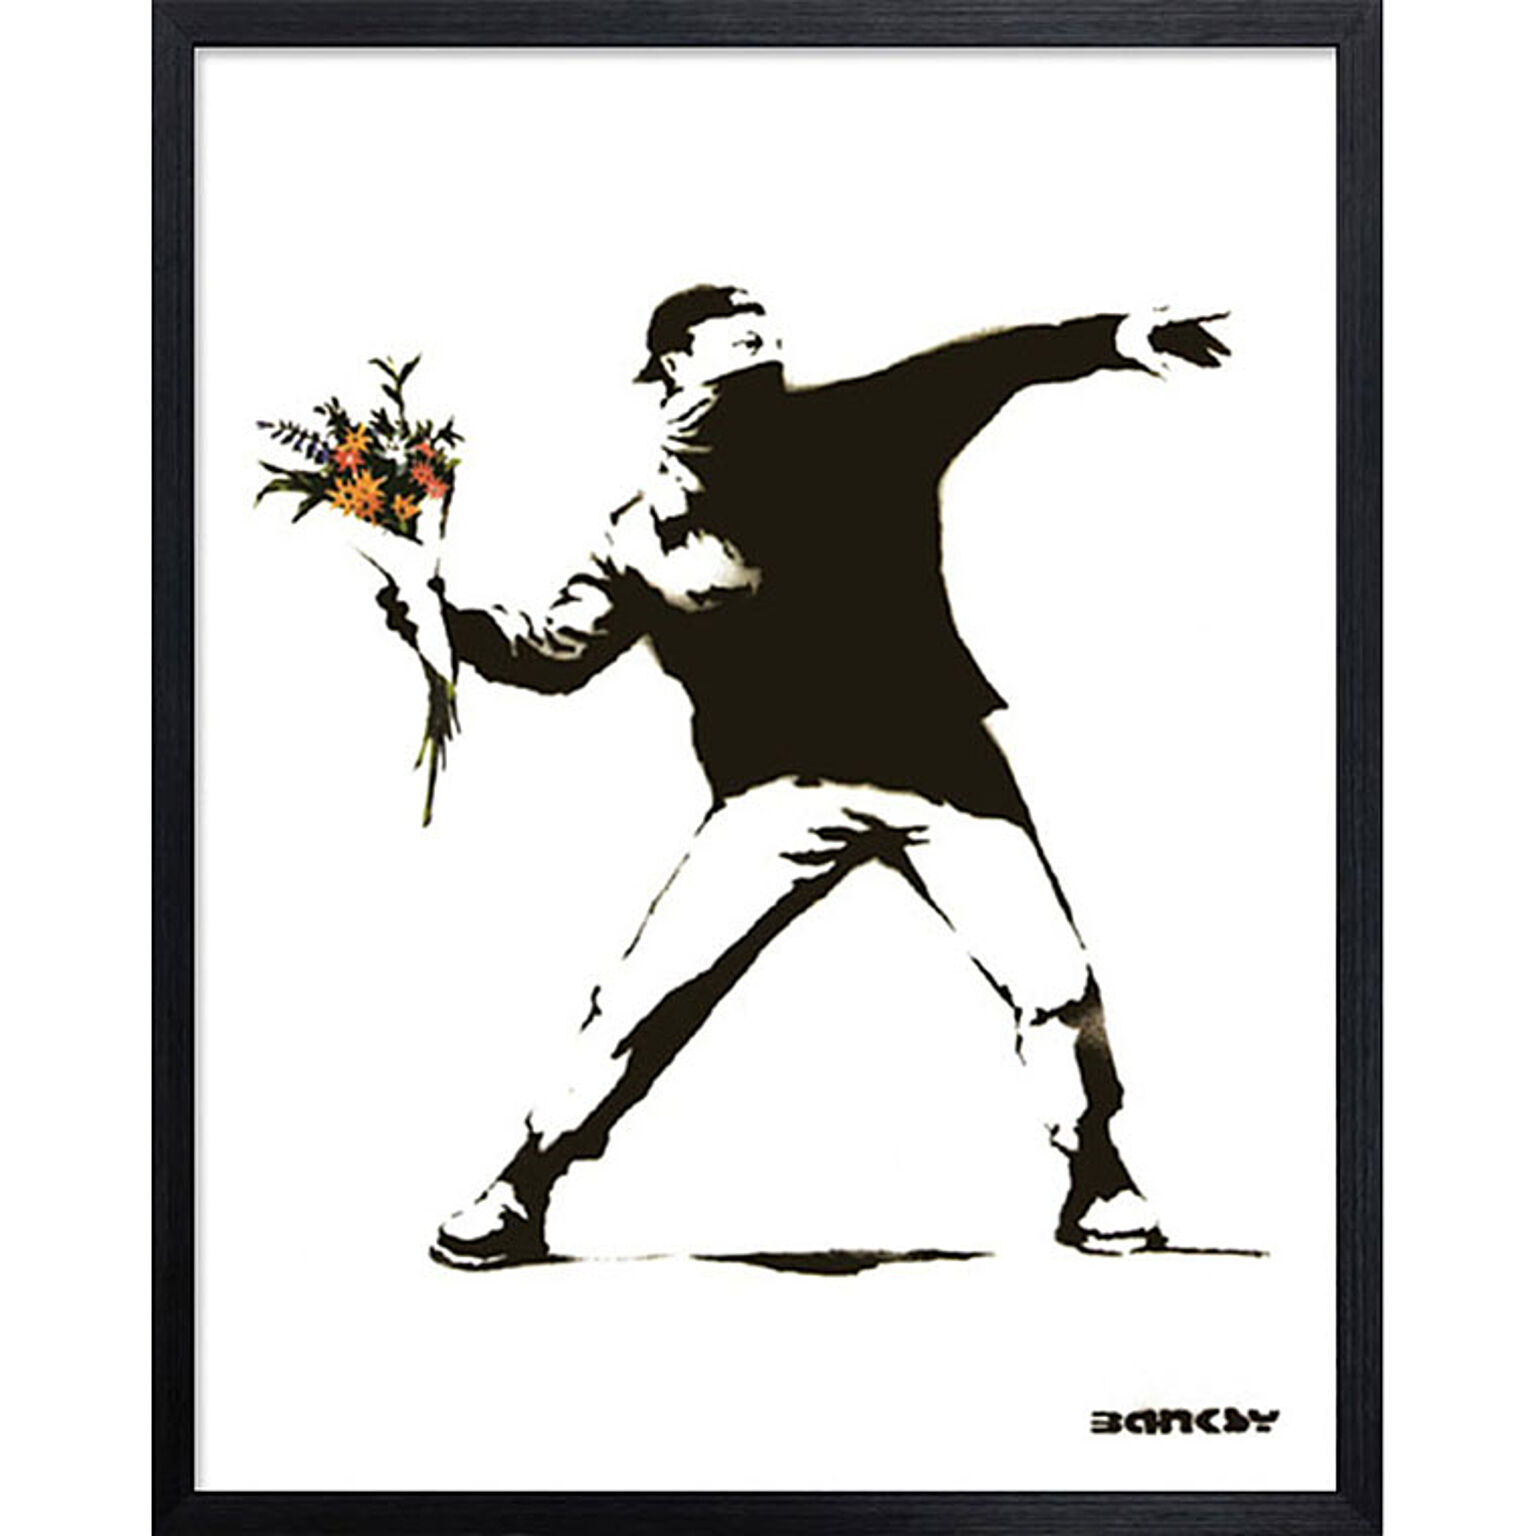 バンクシー Banksy ポスター アートパネル 絵画 インテリア アートポスター 壁掛け アートフレーム タペストリー プリントポスター デザイナー おしゃれ シンプル モダン IBA-61735